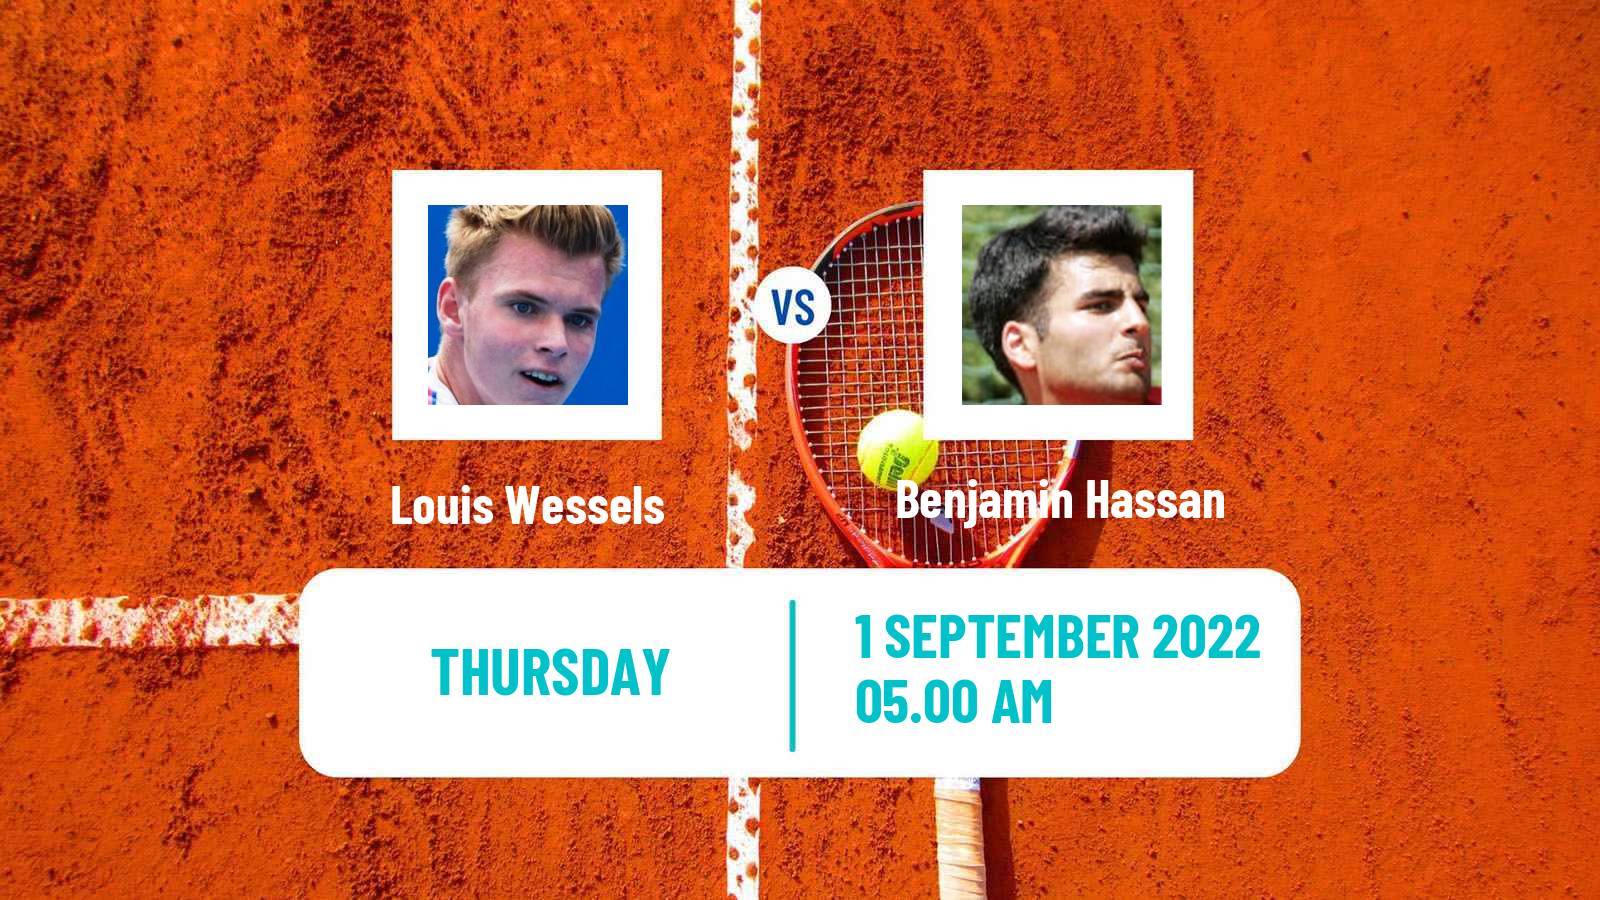 Tennis ATP Challenger Louis Wessels - Benjamin Hassan